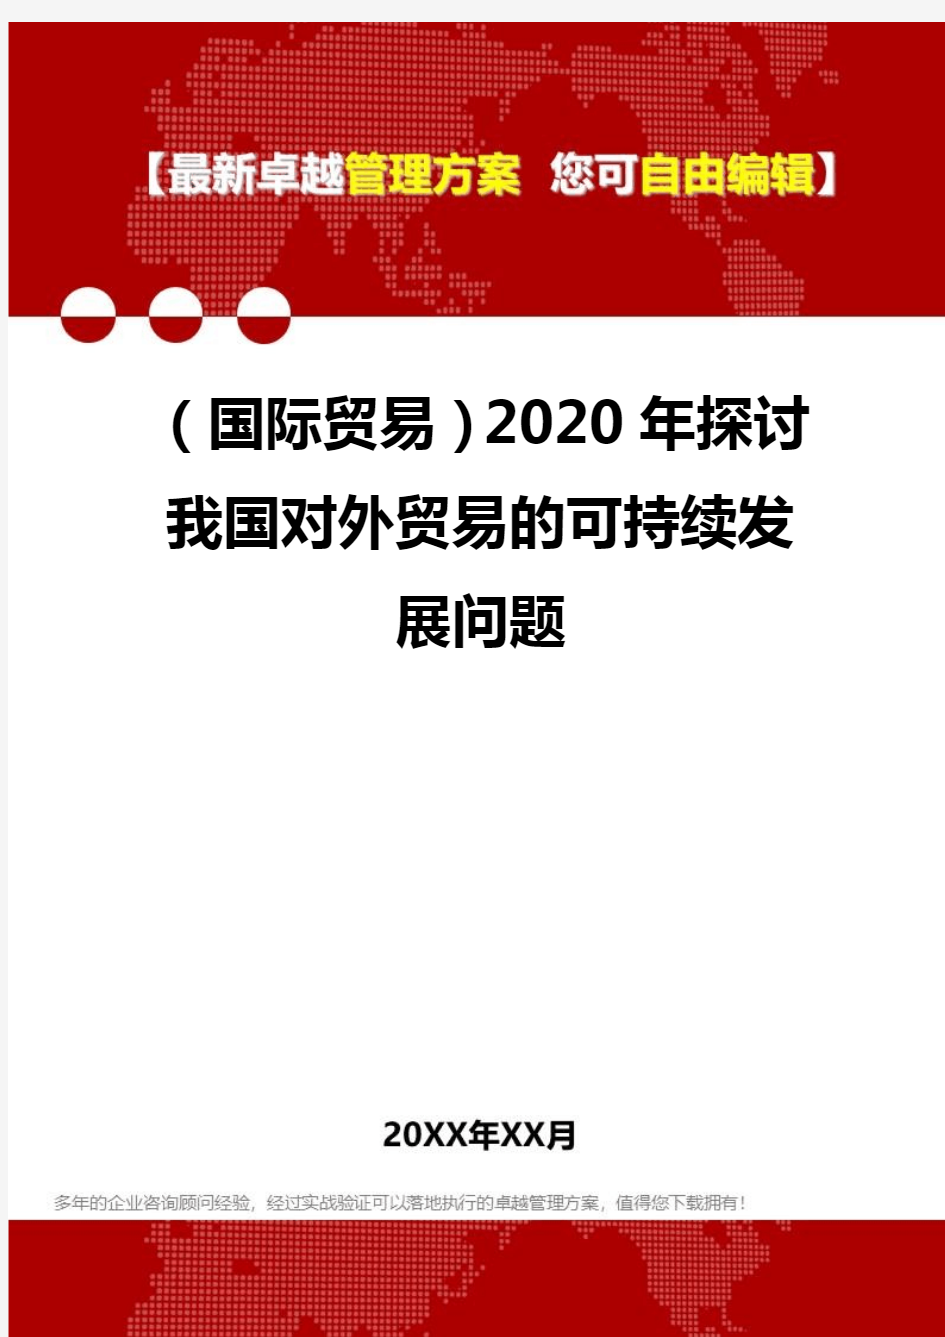 2020年(国际贸易)探讨我国对外贸易的可持续发展问题